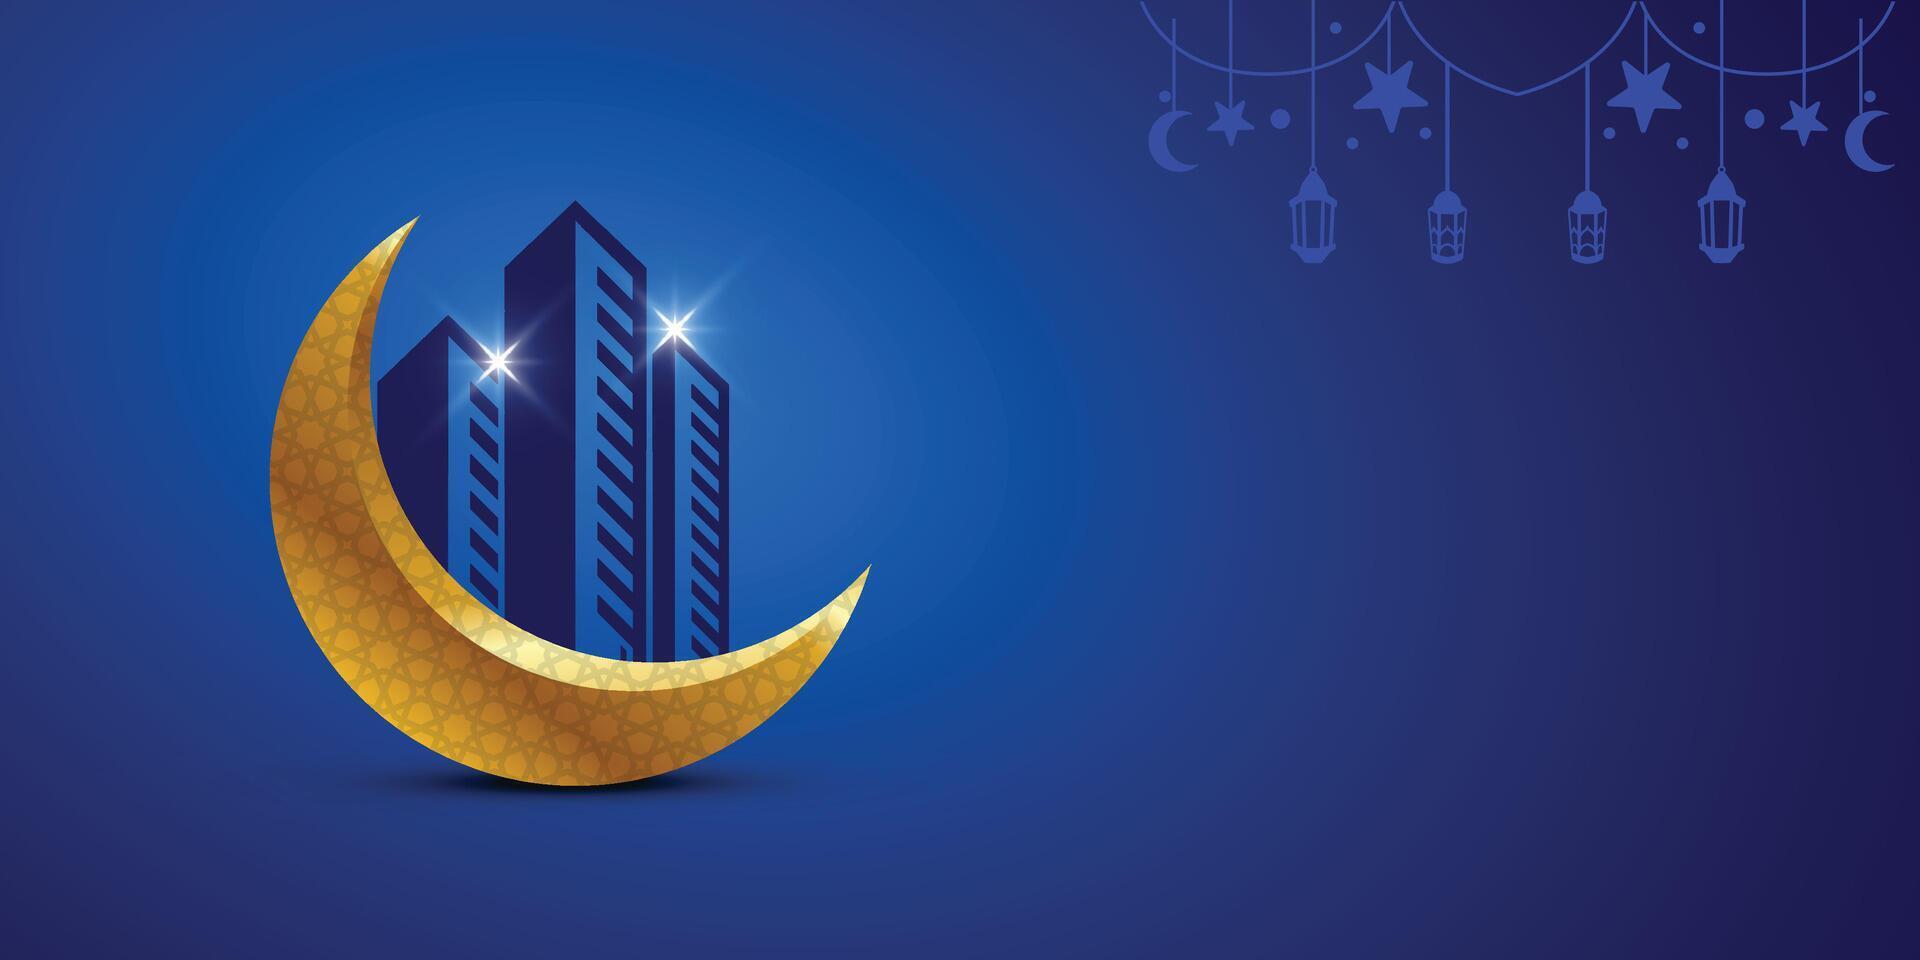 golden dekorativ Neu Mond mit Gebäude auf dunkel Blau islamisch Hintergrund, eid und Ramadan Konzept zum Konstruktion, Baumeister, Entwickler, Ingenieur, bürgerlich Ingenieur, Gehäuse, Architekt Design vektor